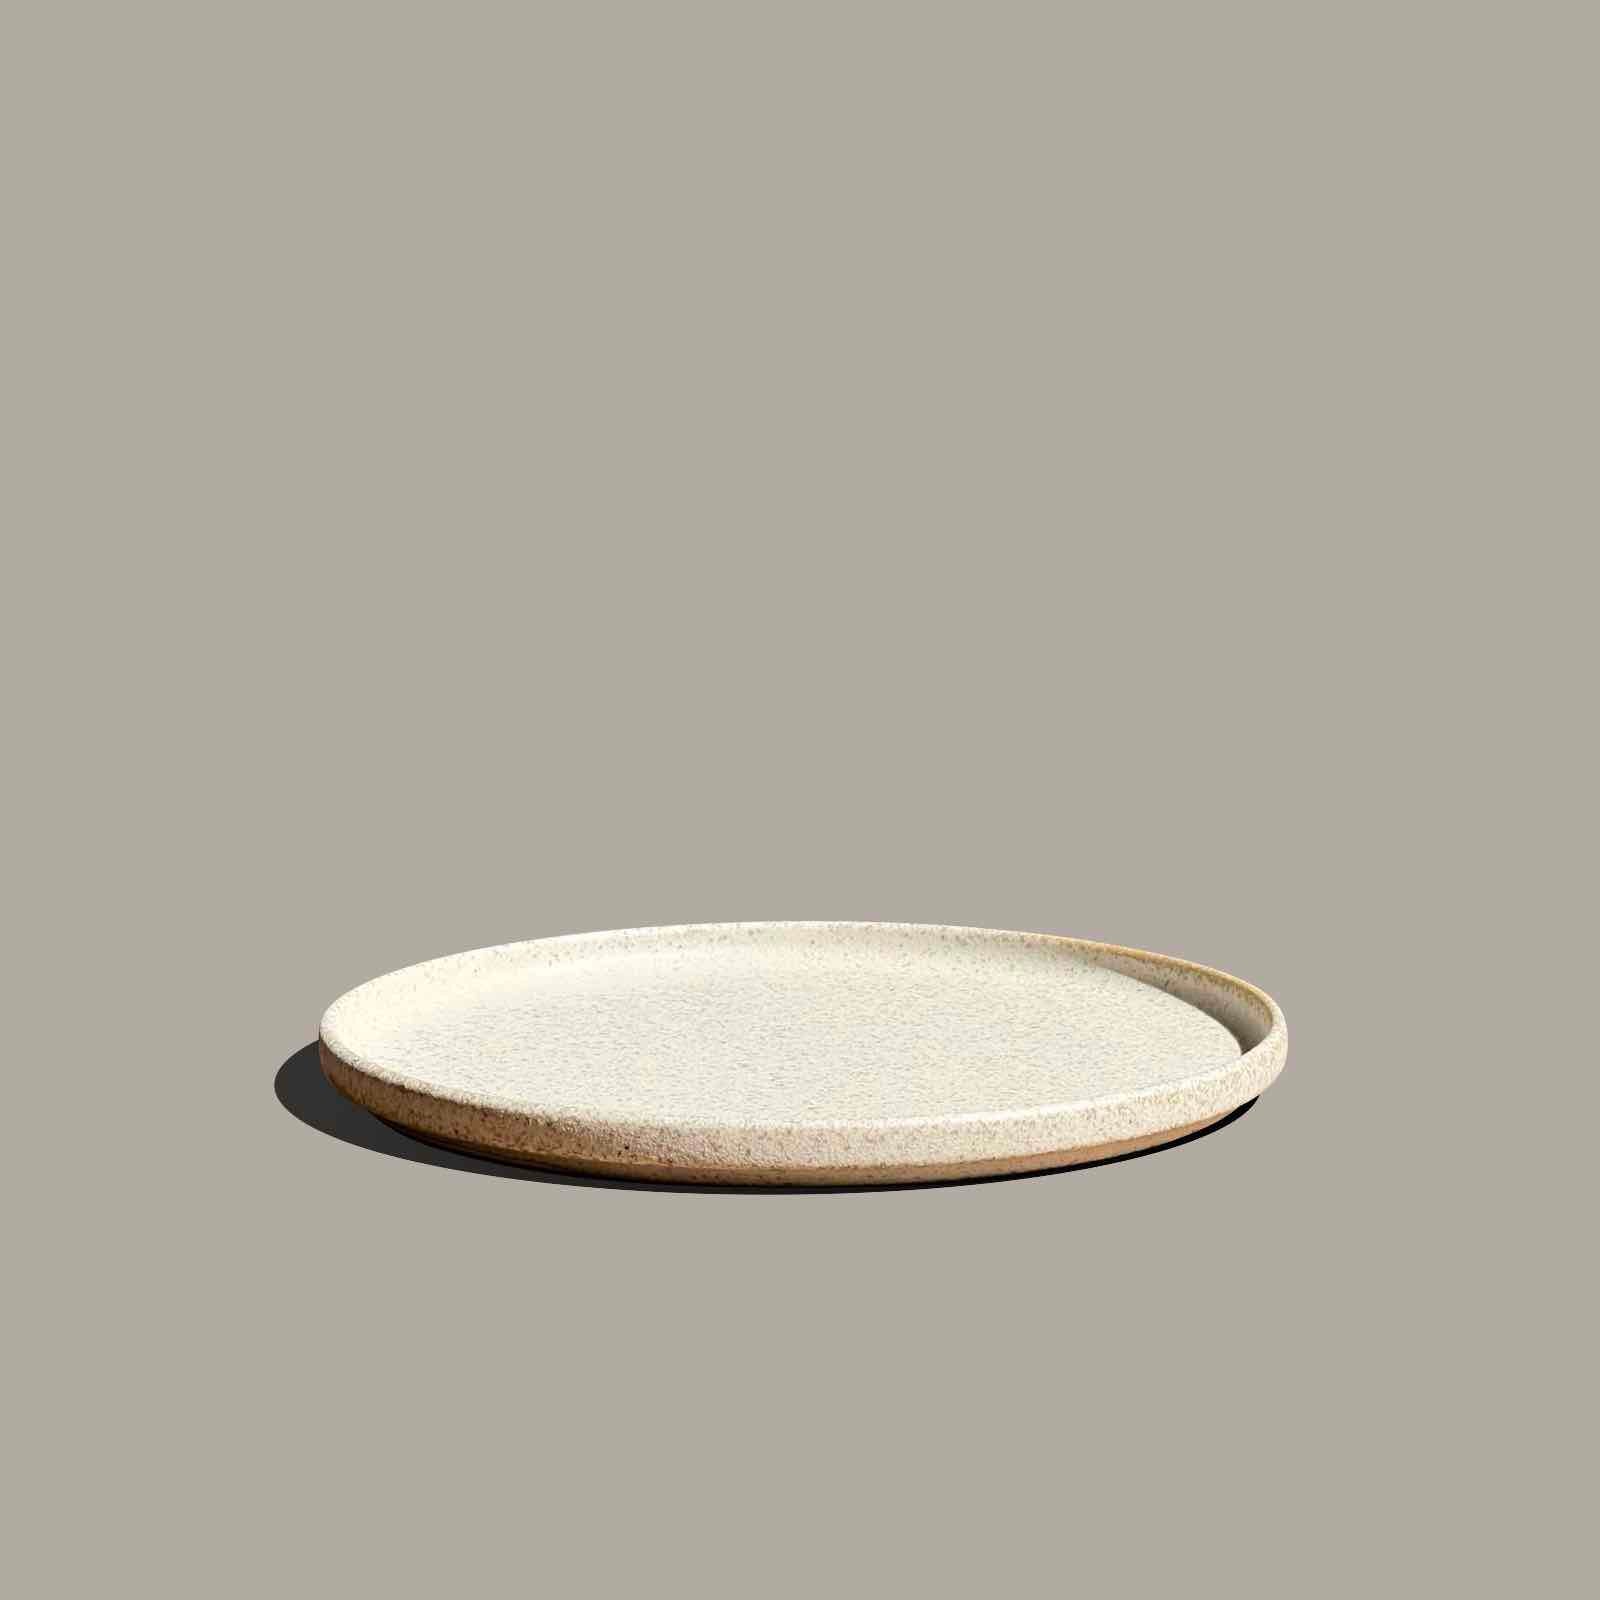 Stone textured ceramic tray